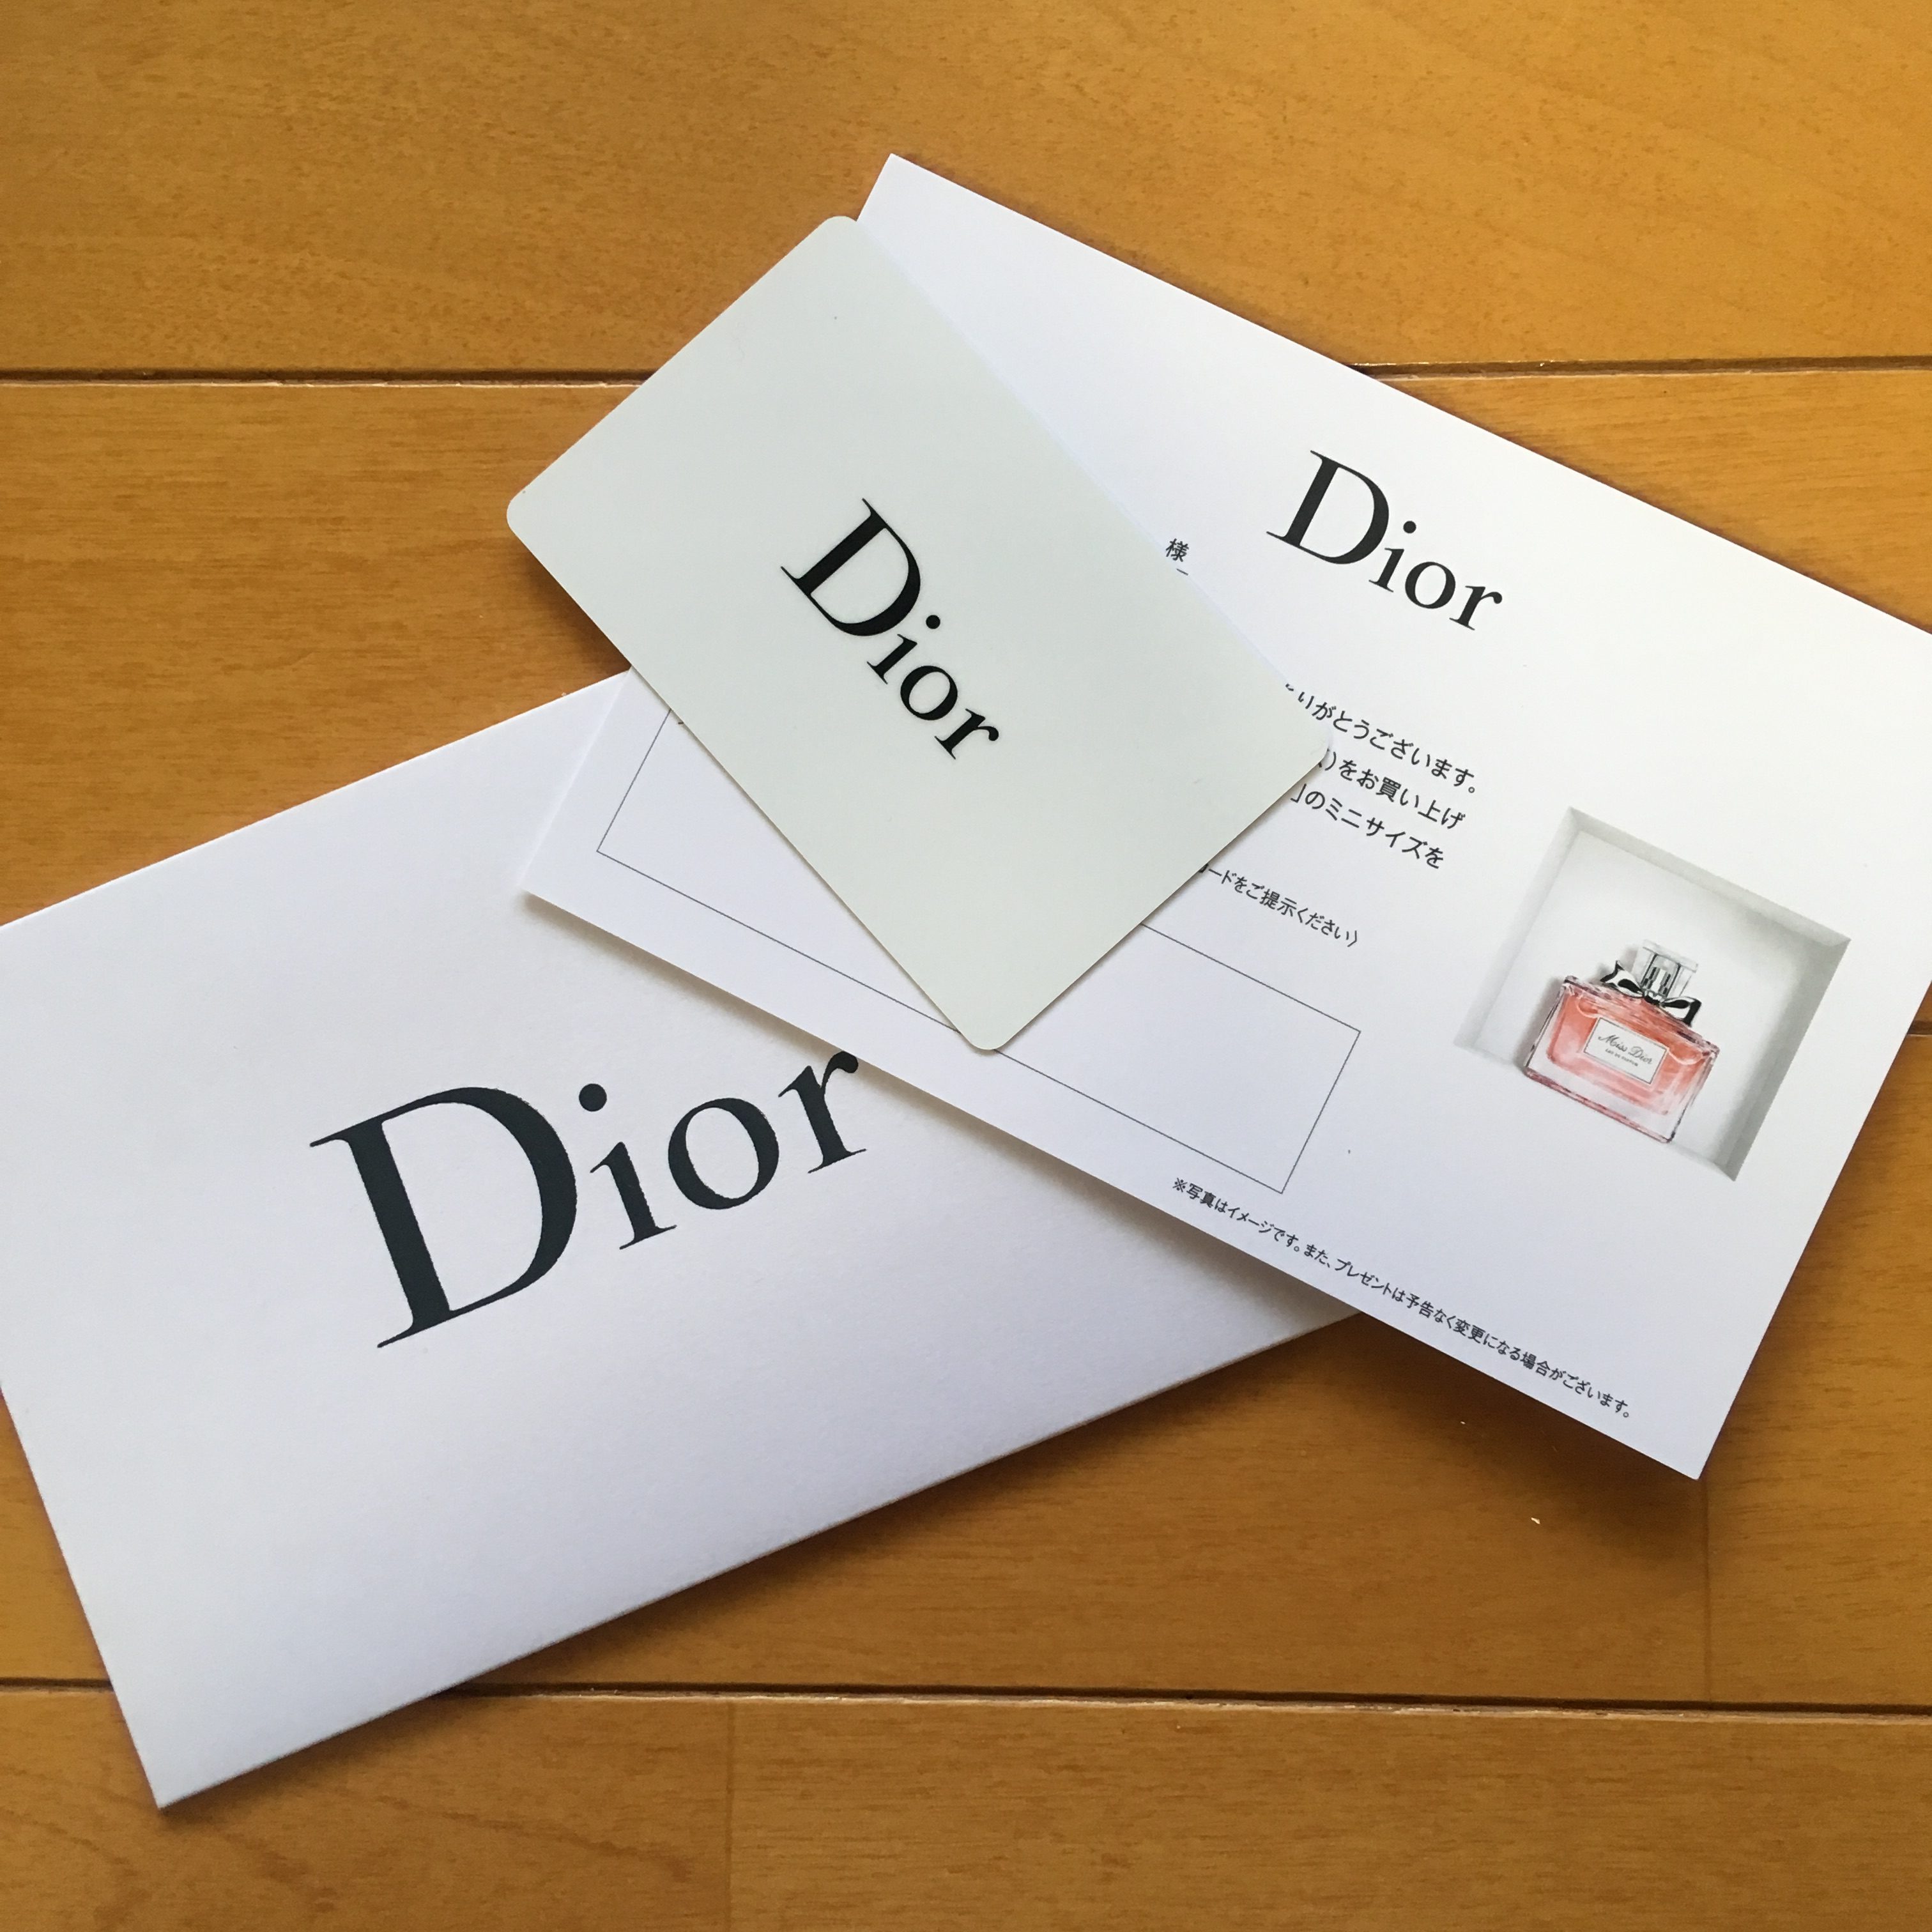 Dior】カウンターでの登録がある人はオンラインブティック利用時に注意